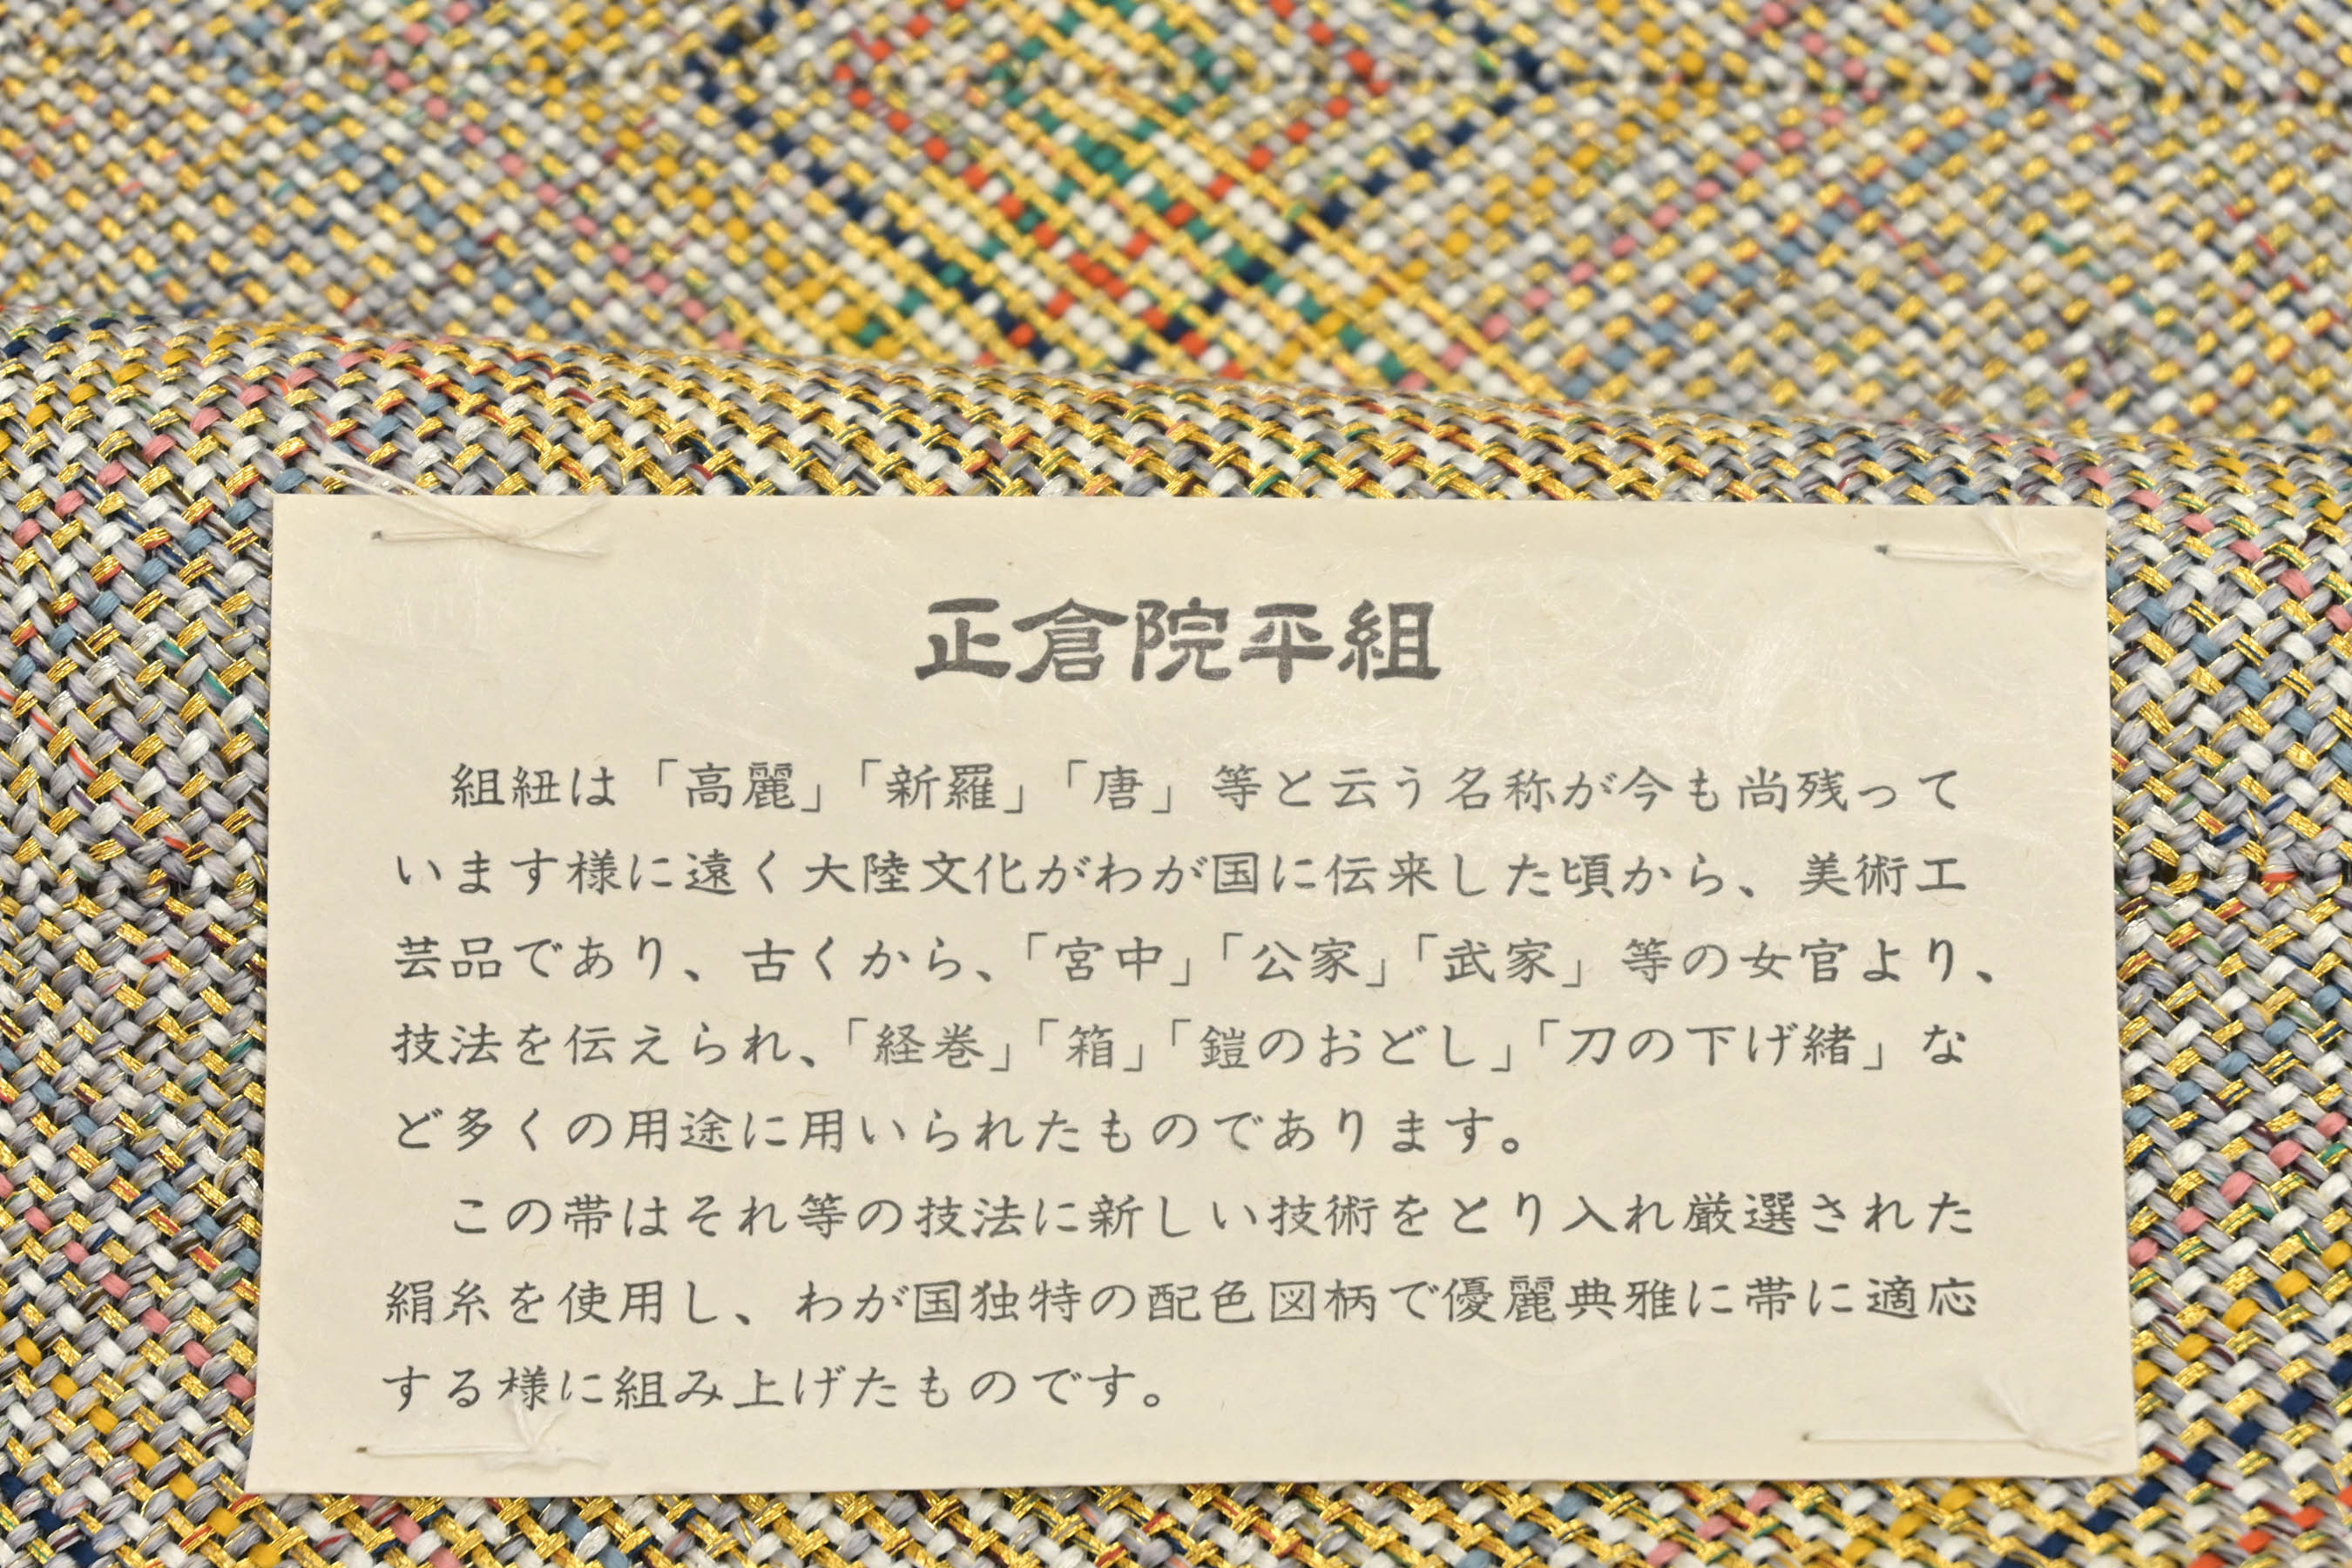 【滋賀喜】 正倉院平組八寸名古屋帯 「彩菱繋」 織の美技に、素材感。